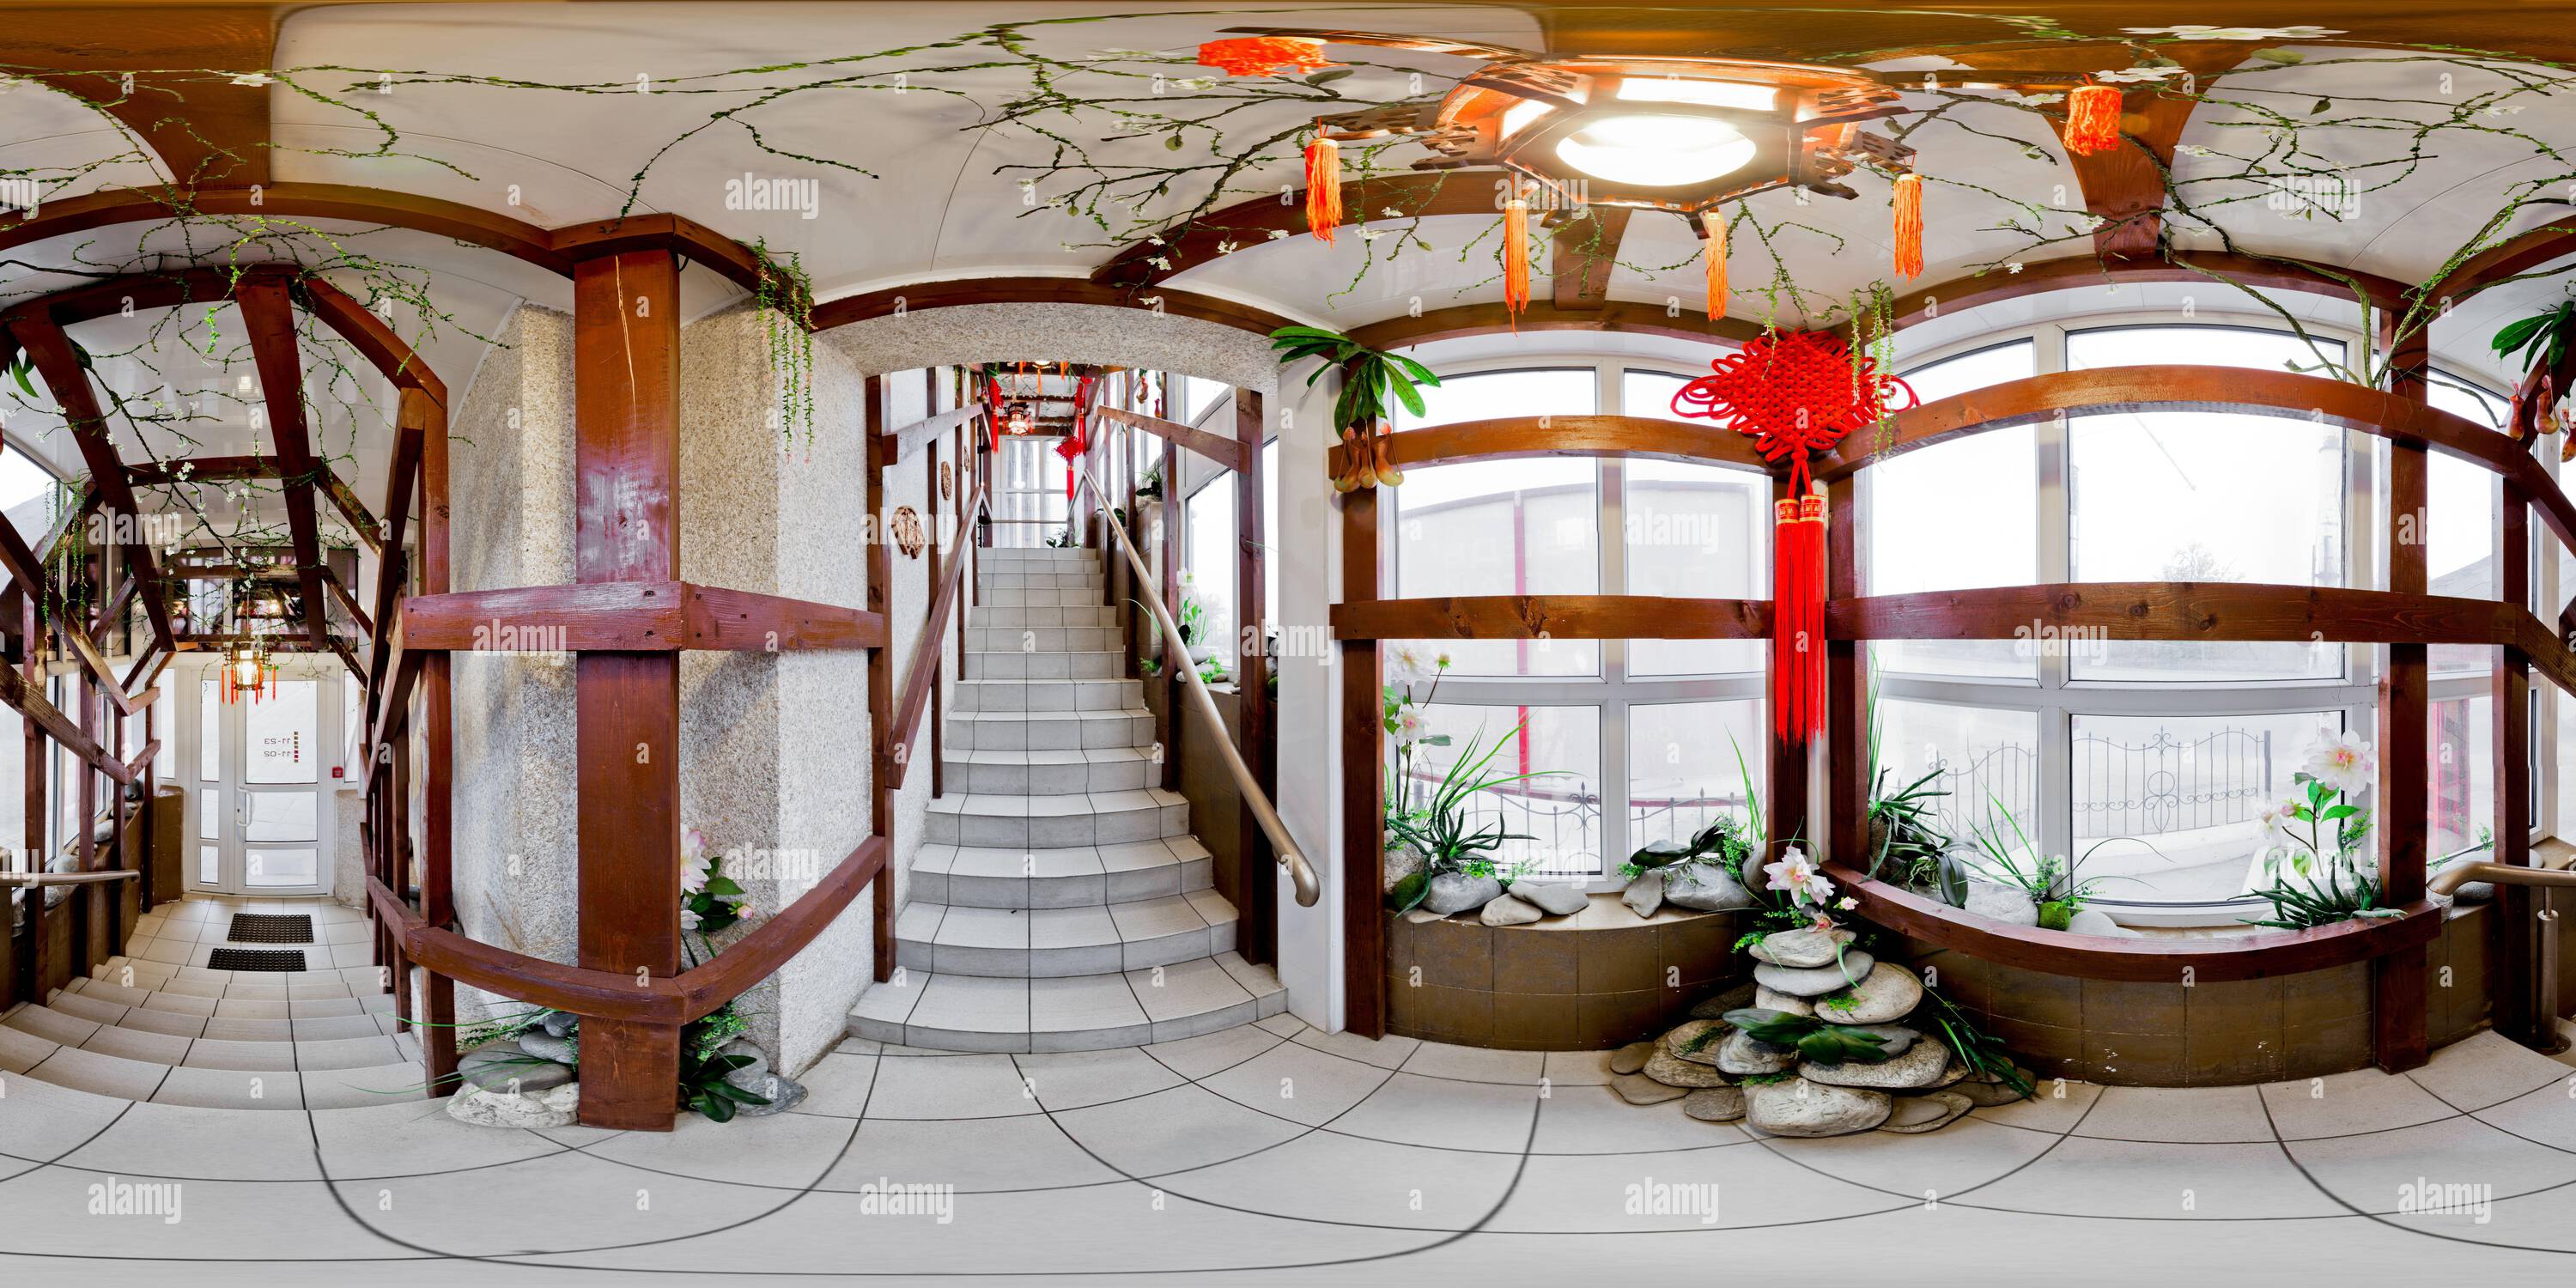 Vue panoramique à 360° de Panorama sphérique à 360 degrés sans couture en projection équirectangulaire d'une staiway partiellement stylisée jusqu'au restaurant chinois de Tula, Russie - Novemb